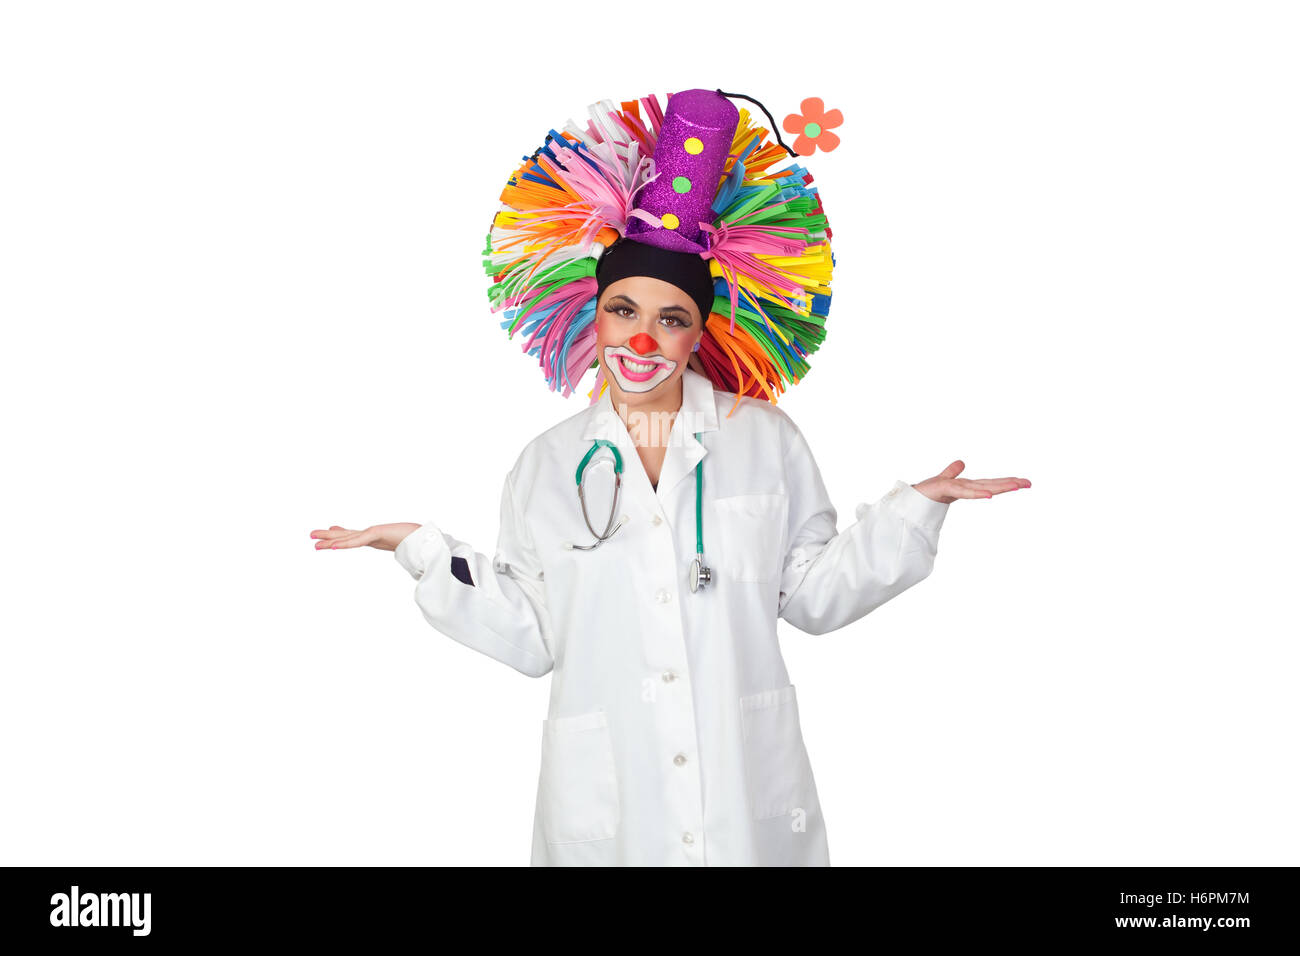 Clown terapia immagini e fotografie stock ad alta risoluzione - Alamy